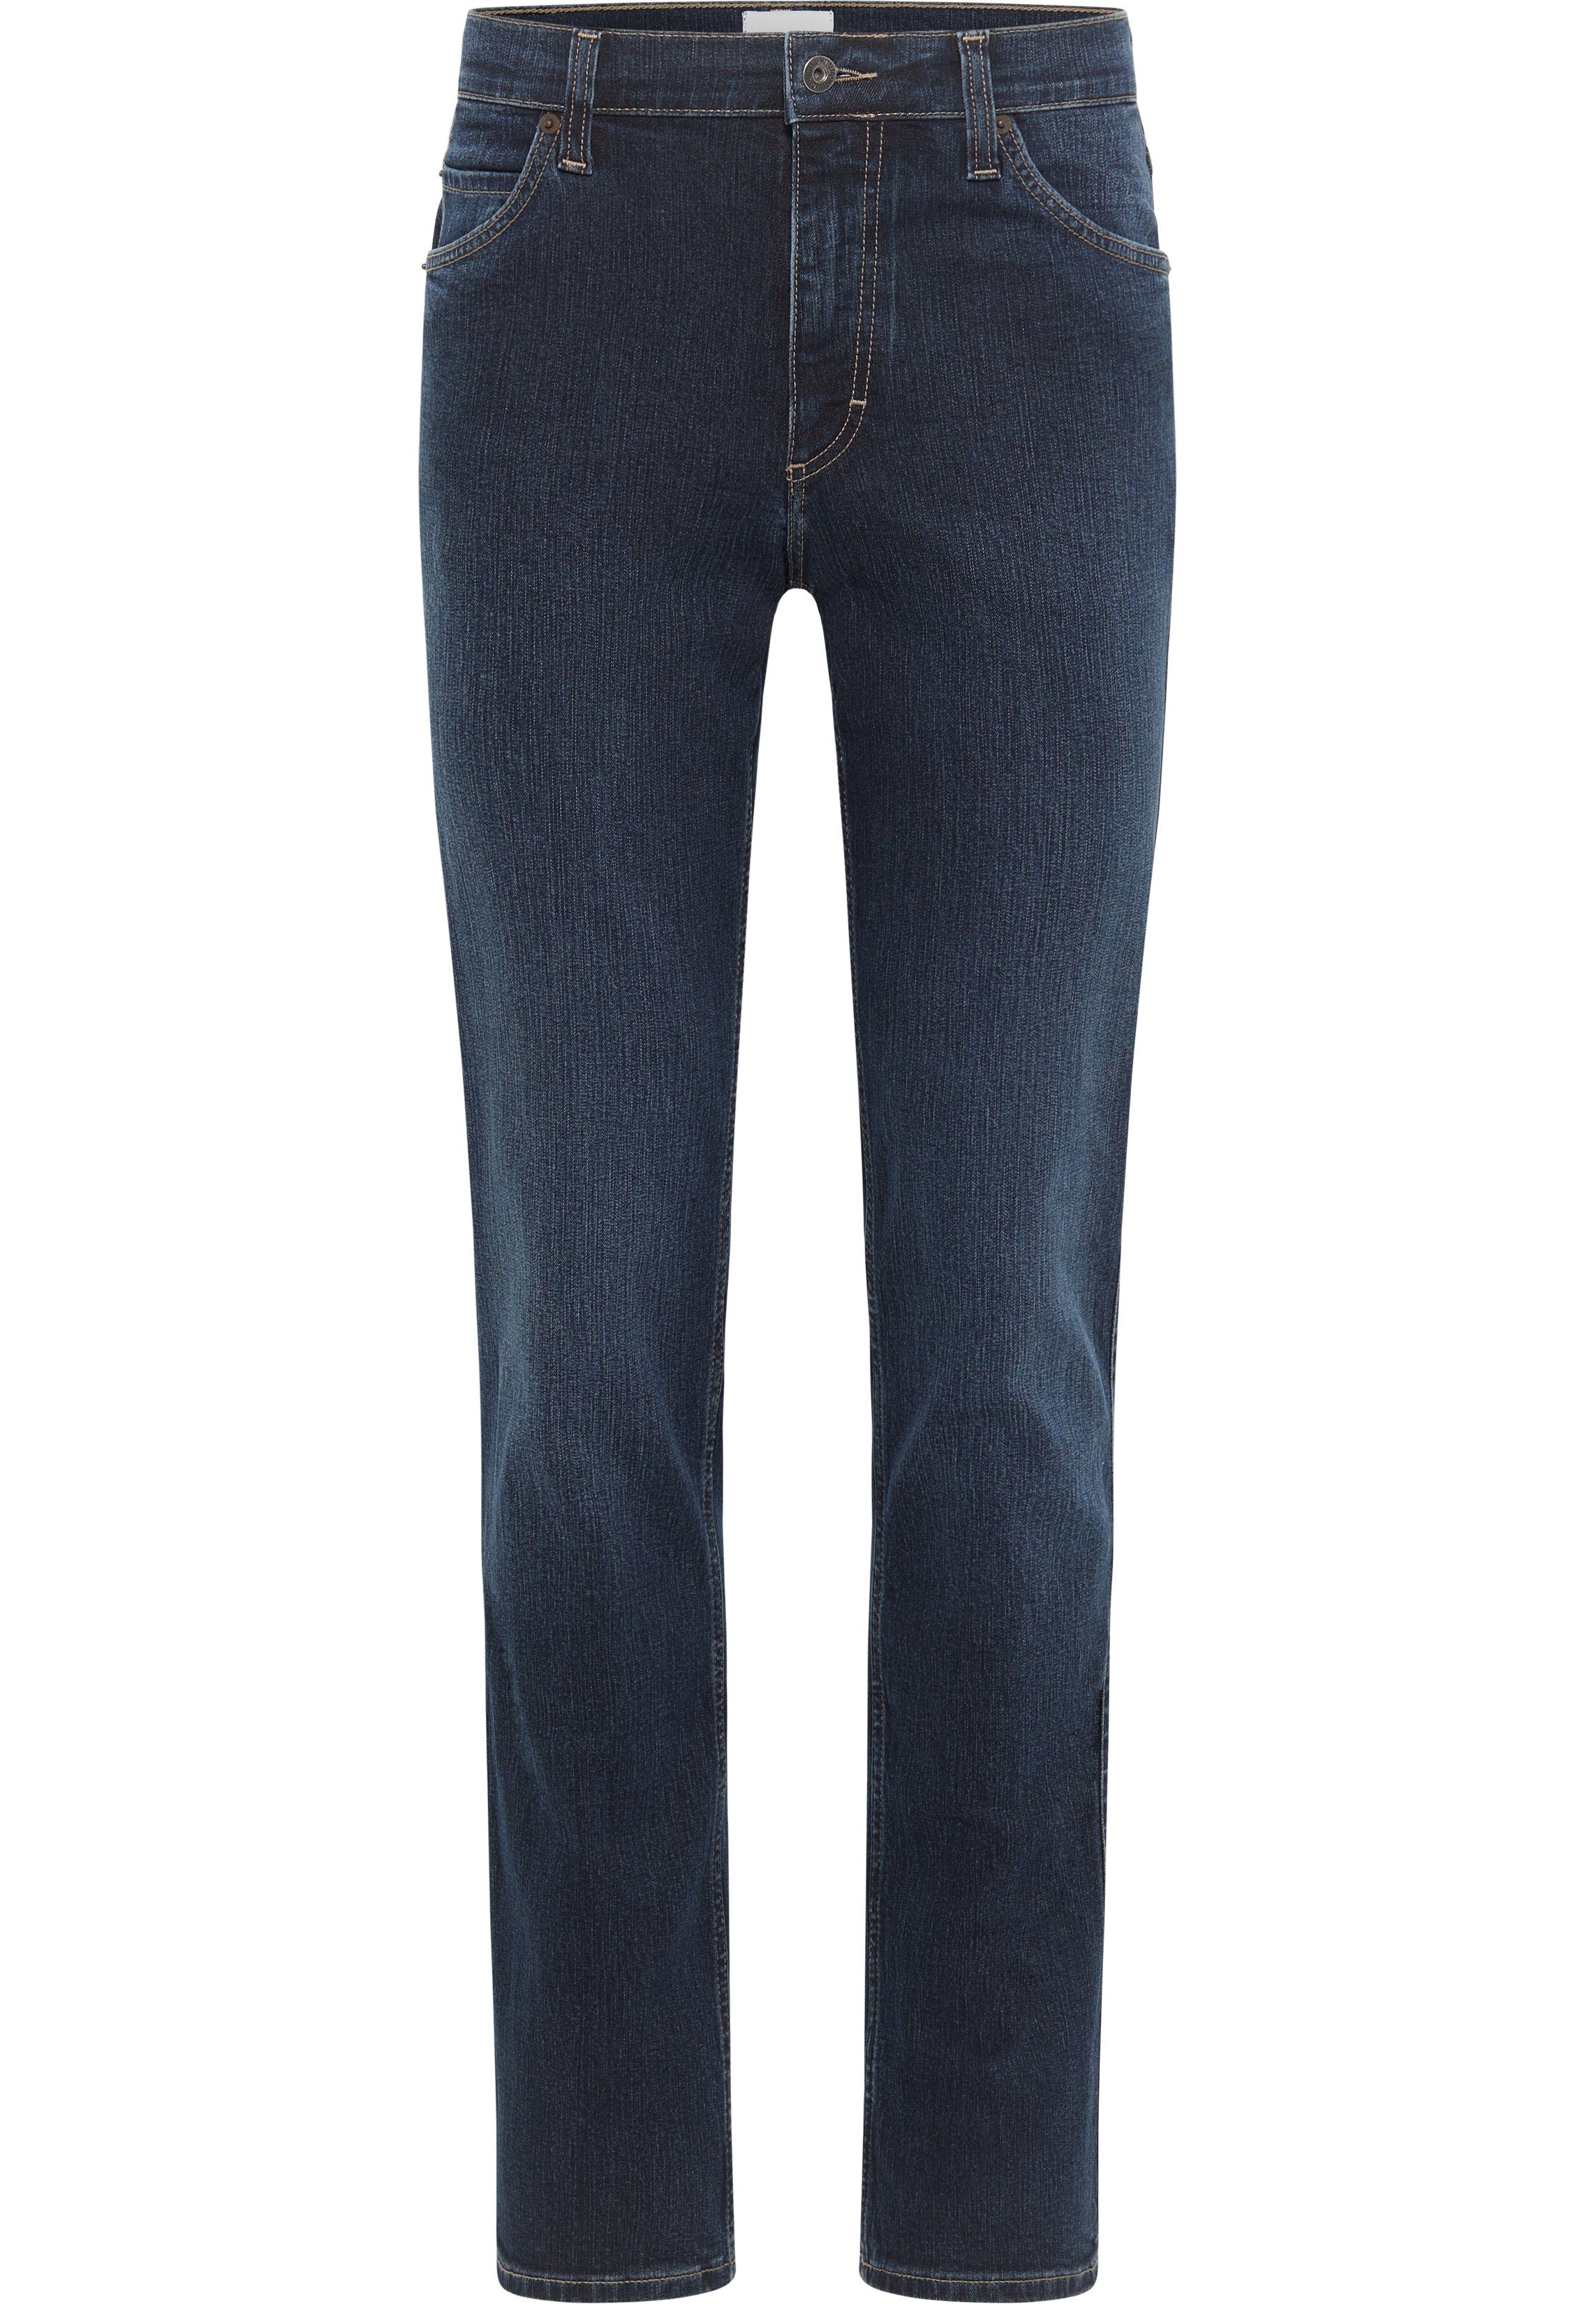 [Im Angebot zum niedrigsten Preis] MUSTANG 5-Pocket-Jeans Tramper